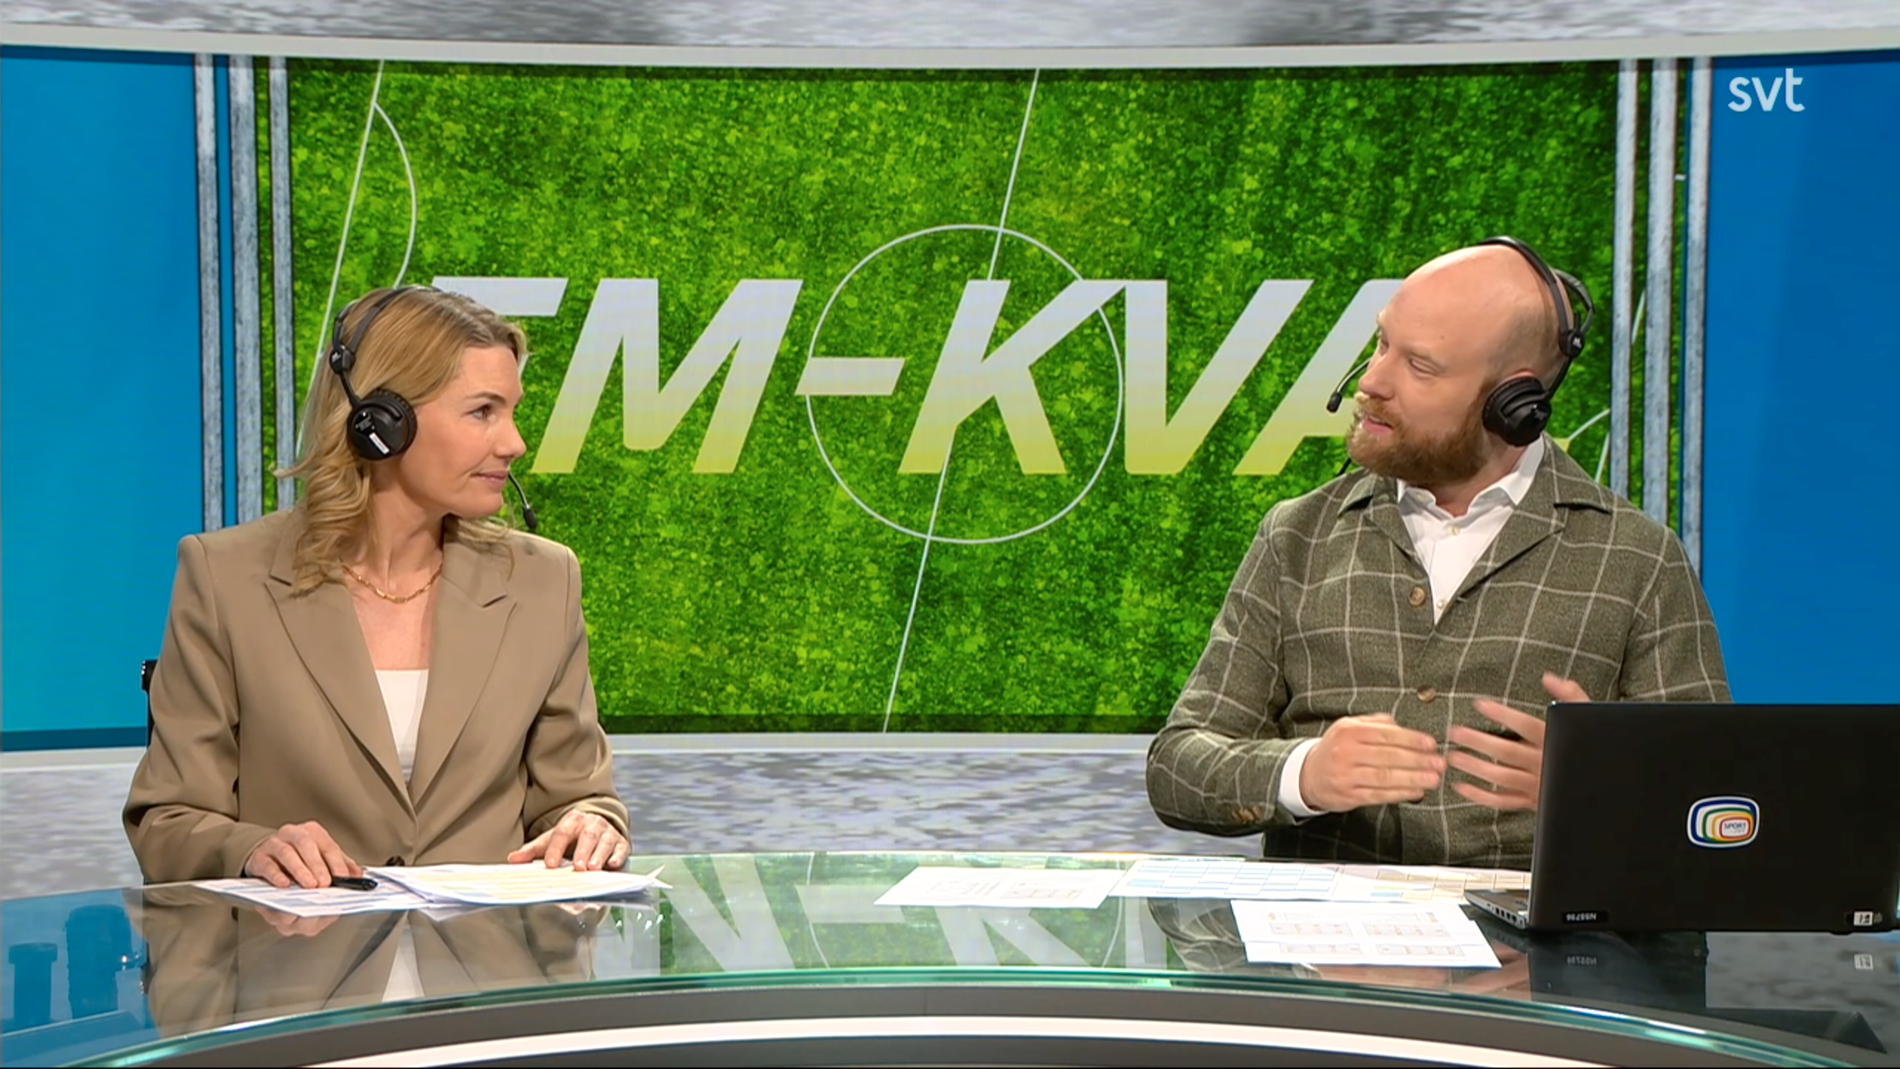 SVT:s studio och kommentering under matchen mot England, beståendes av Hannar Marklund (expert) och Ola Bränholm. 